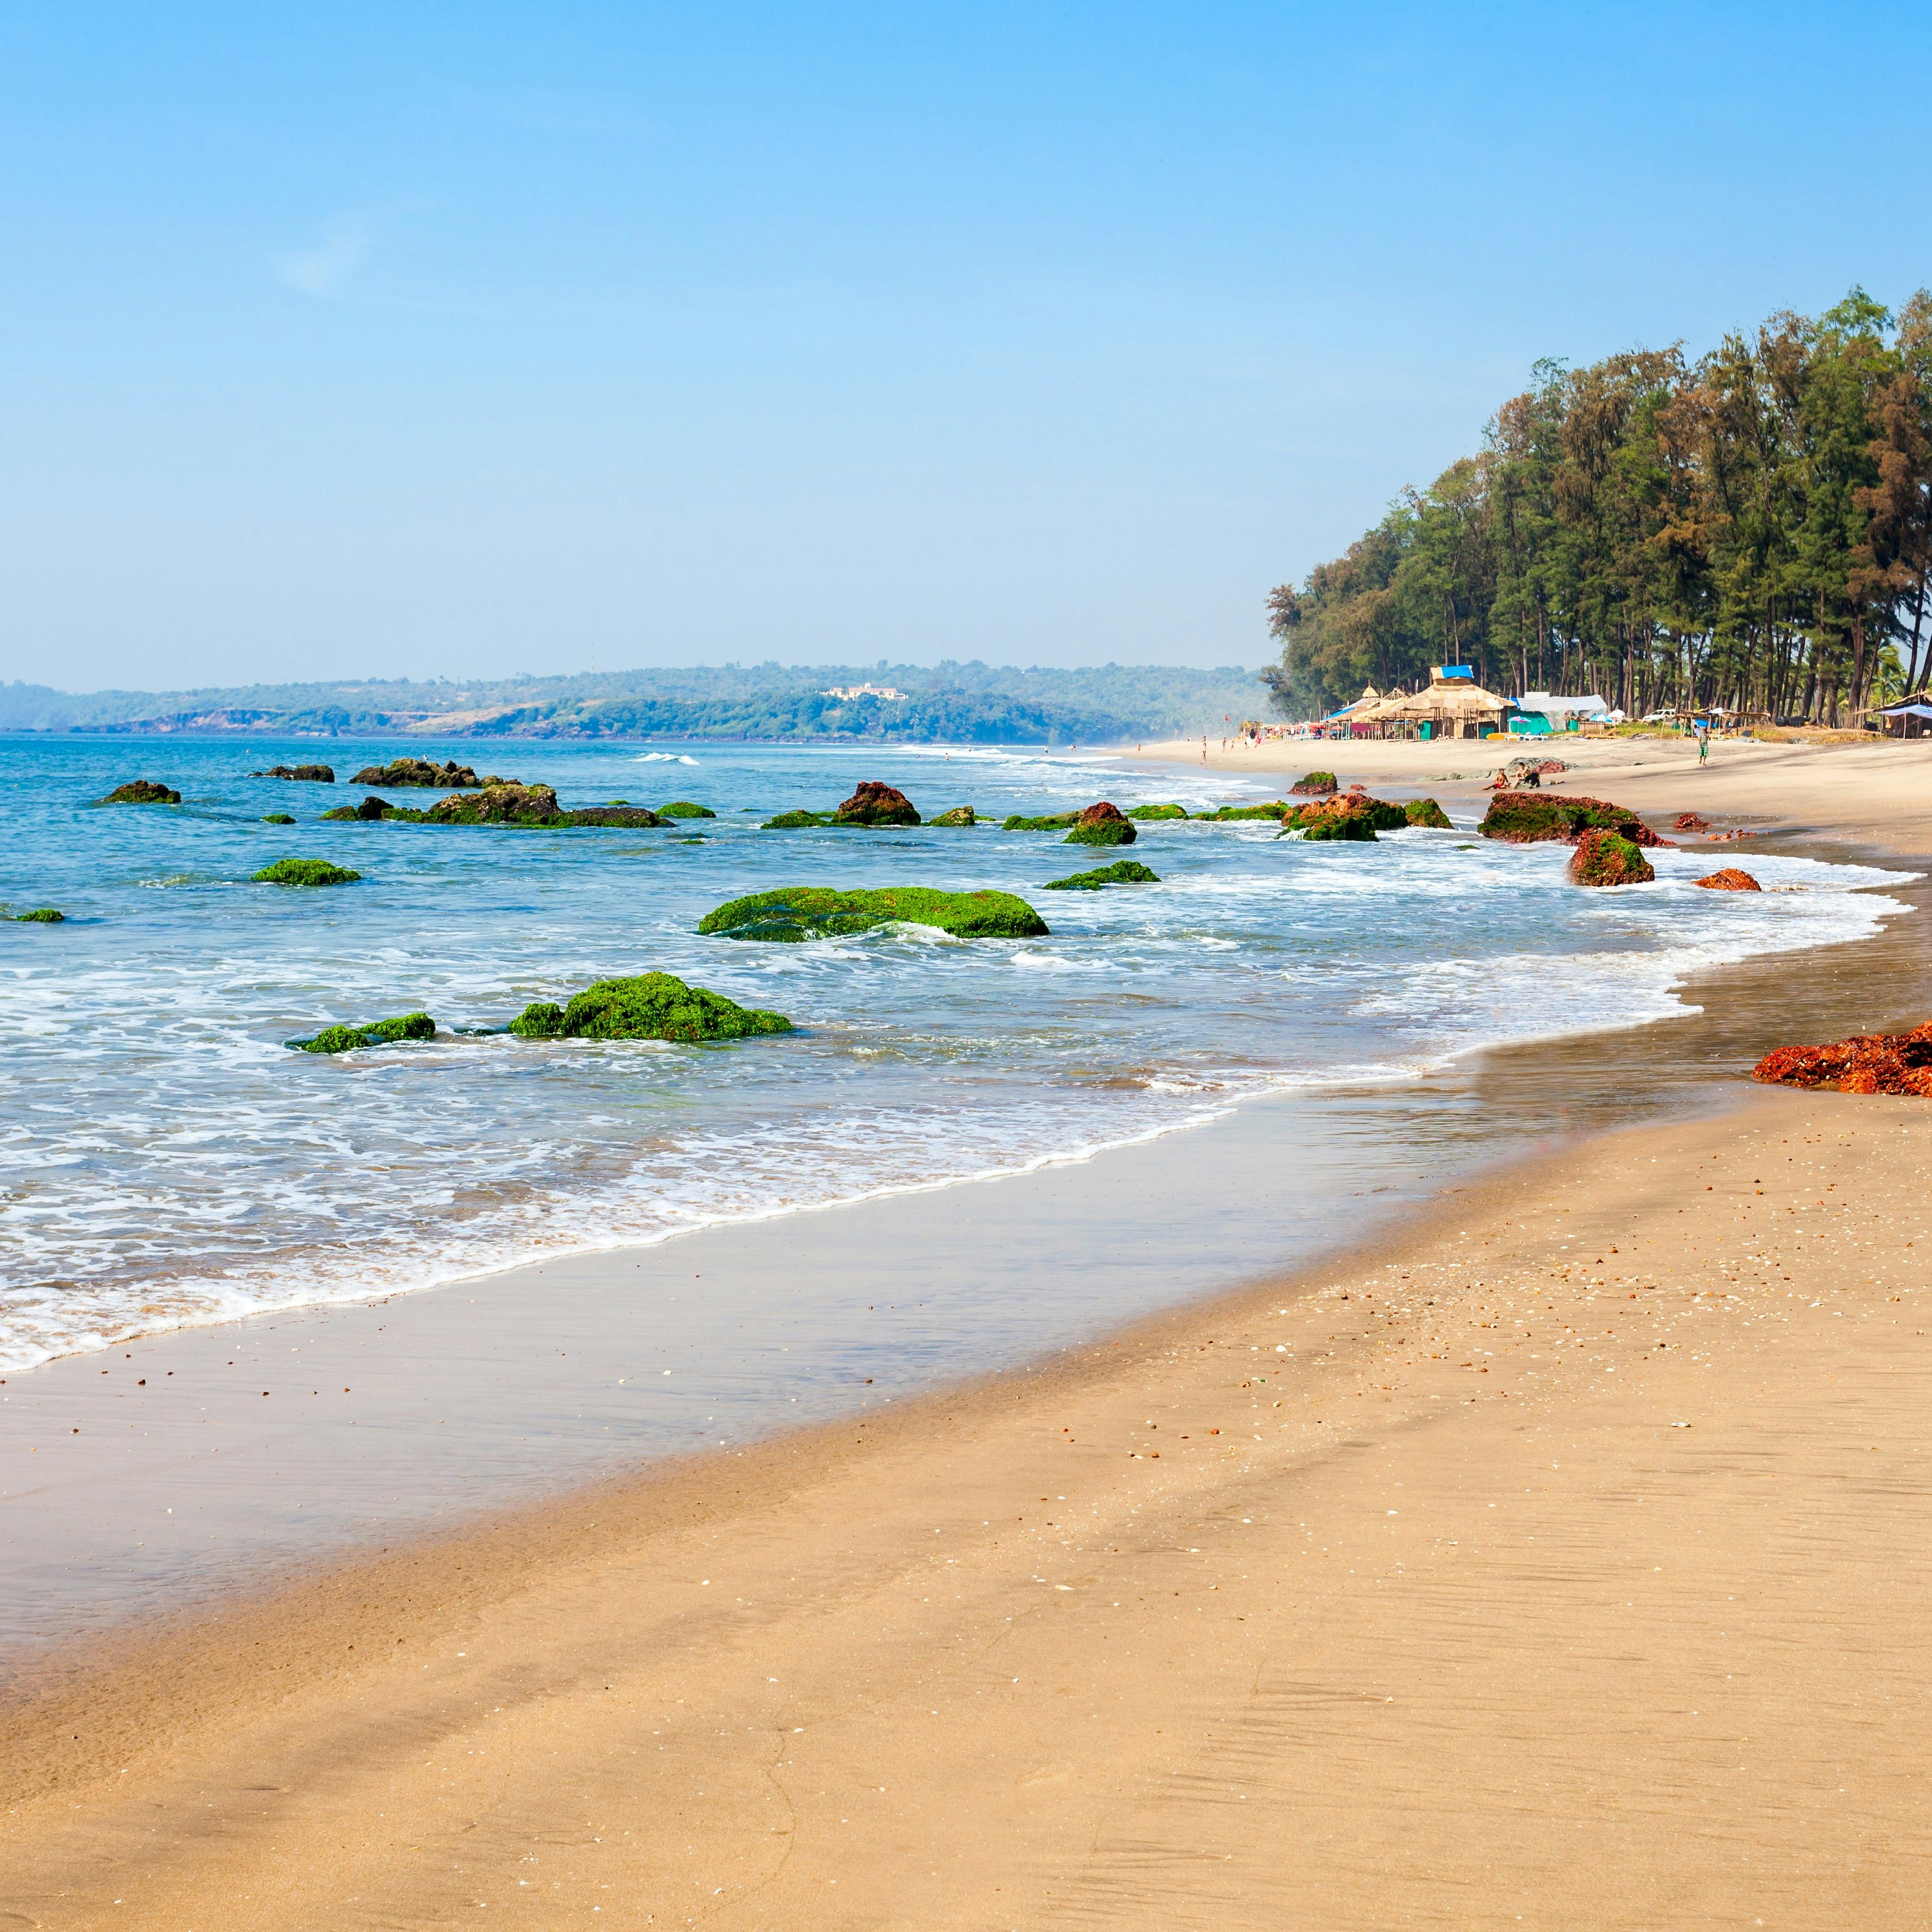 Querim_beach_Goa.jpg